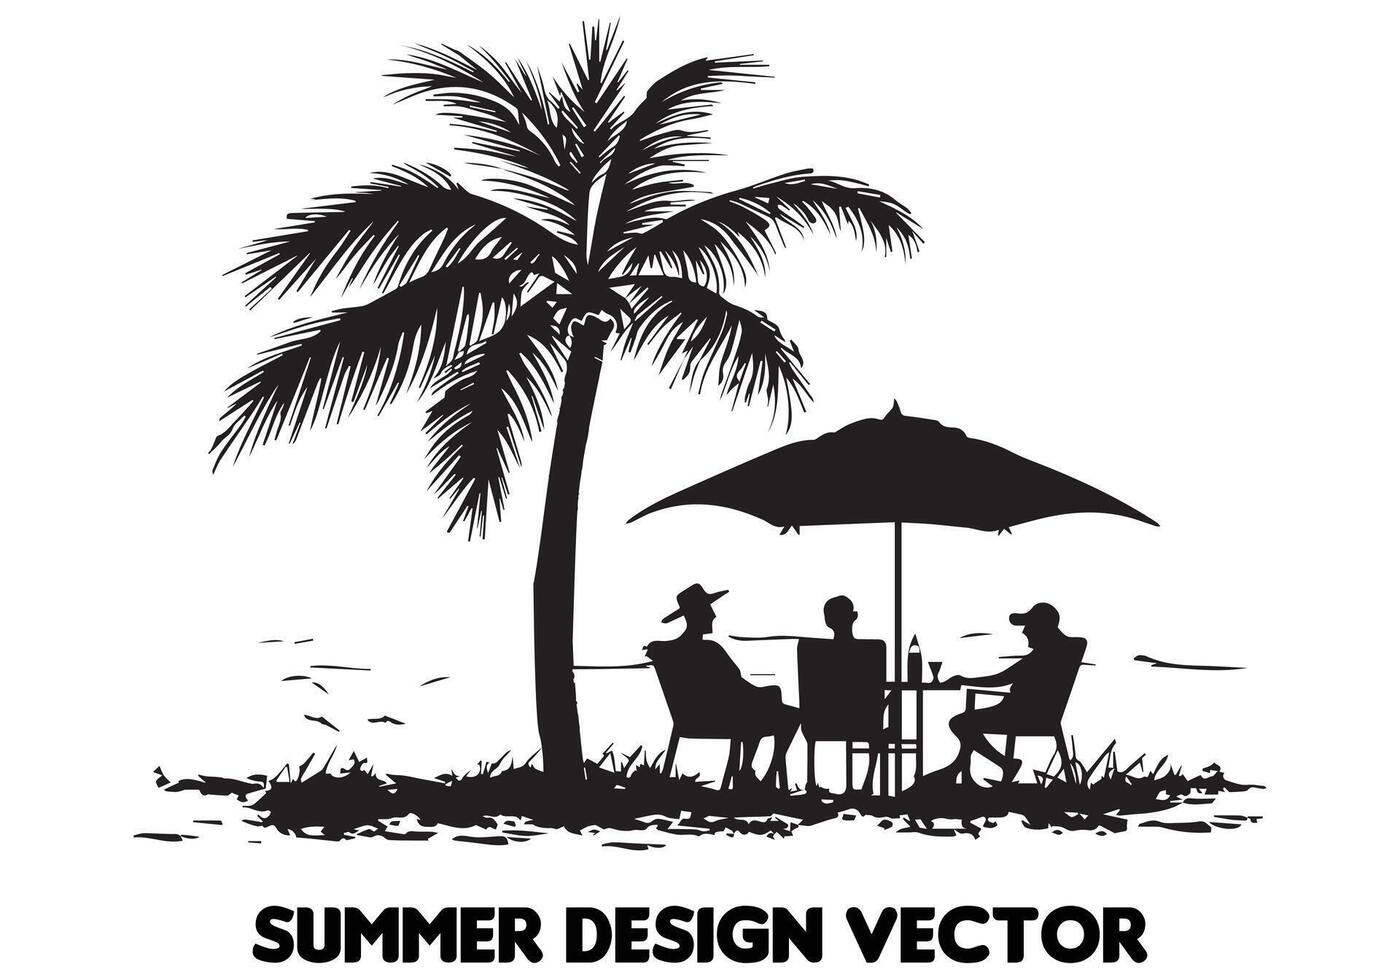 Sommer- Design Palme Baum Sitzung auf Stuhl Vorderseite Tabelle und Regenschirm Mann Strand zum drucken auf Nachfrage schwarz Fett gedruckt einfach Gliederung kostenlos Design vektor